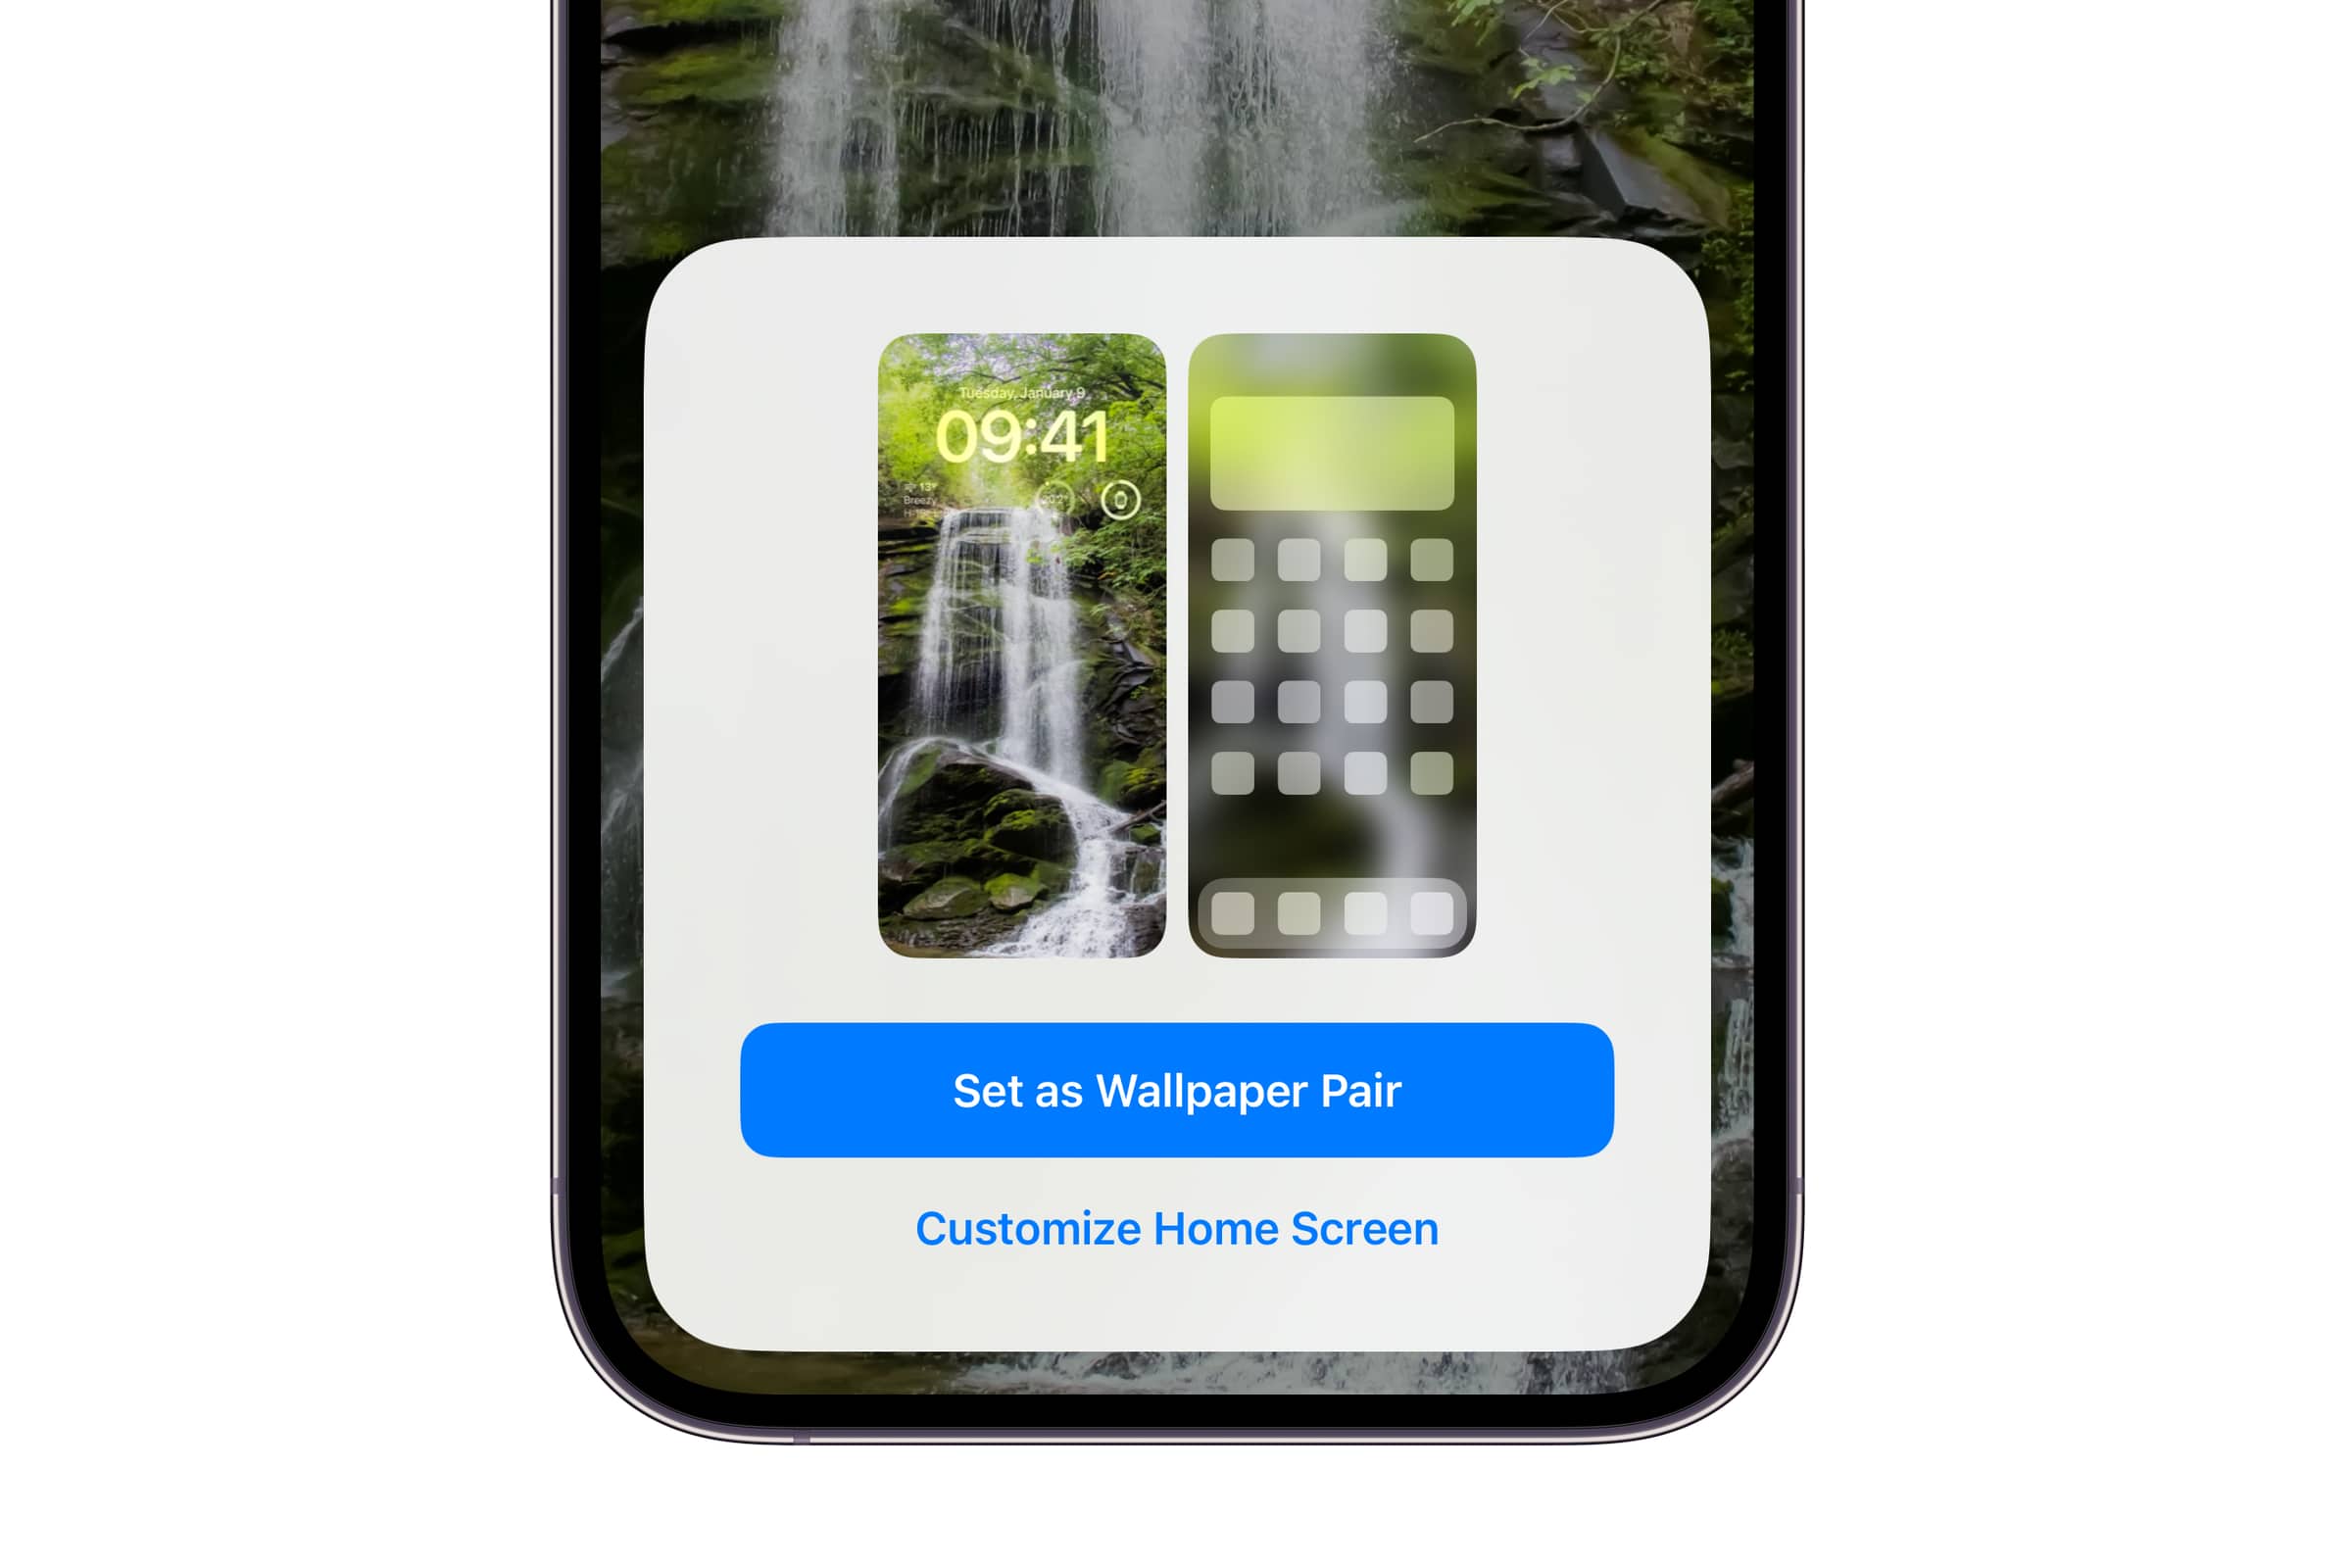 Das iPhone zeigt die Option zum Anpassen des Startbildschirms, wenn das Hintergrundpaar vom Sperrbildschirm aus eingestellt wird.